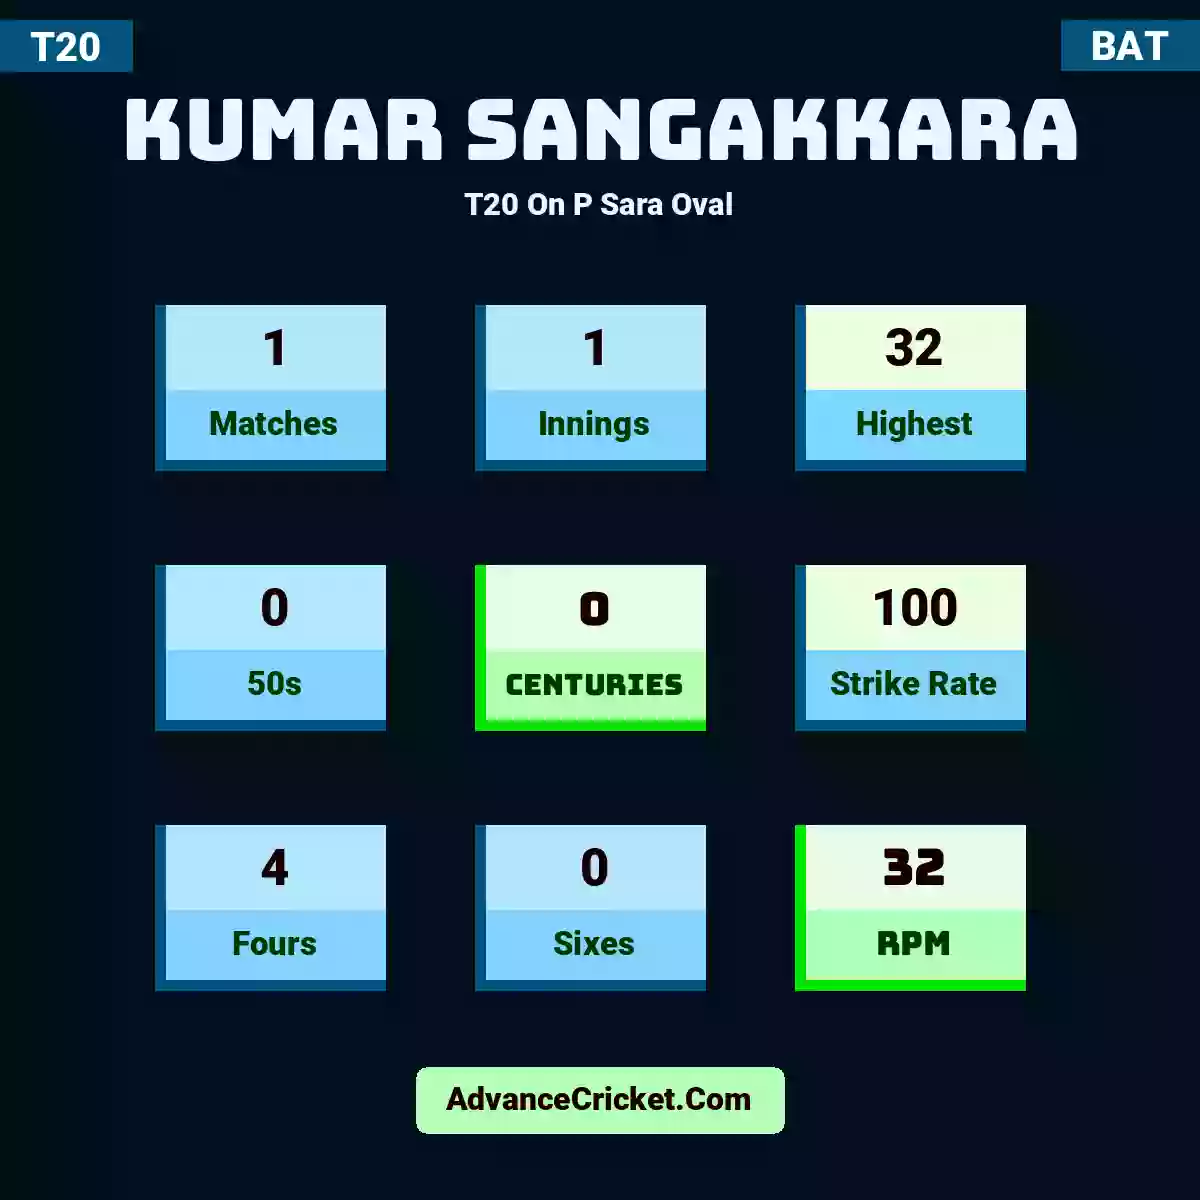 Kumar Sangakkara T20  On P Sara Oval, Kumar Sangakkara played 1 matches, scored 32 runs as highest, 0 half-centuries, and 0 centuries, with a strike rate of 100. K.Sangakkara hit 4 fours and 0 sixes, with an RPM of 32.